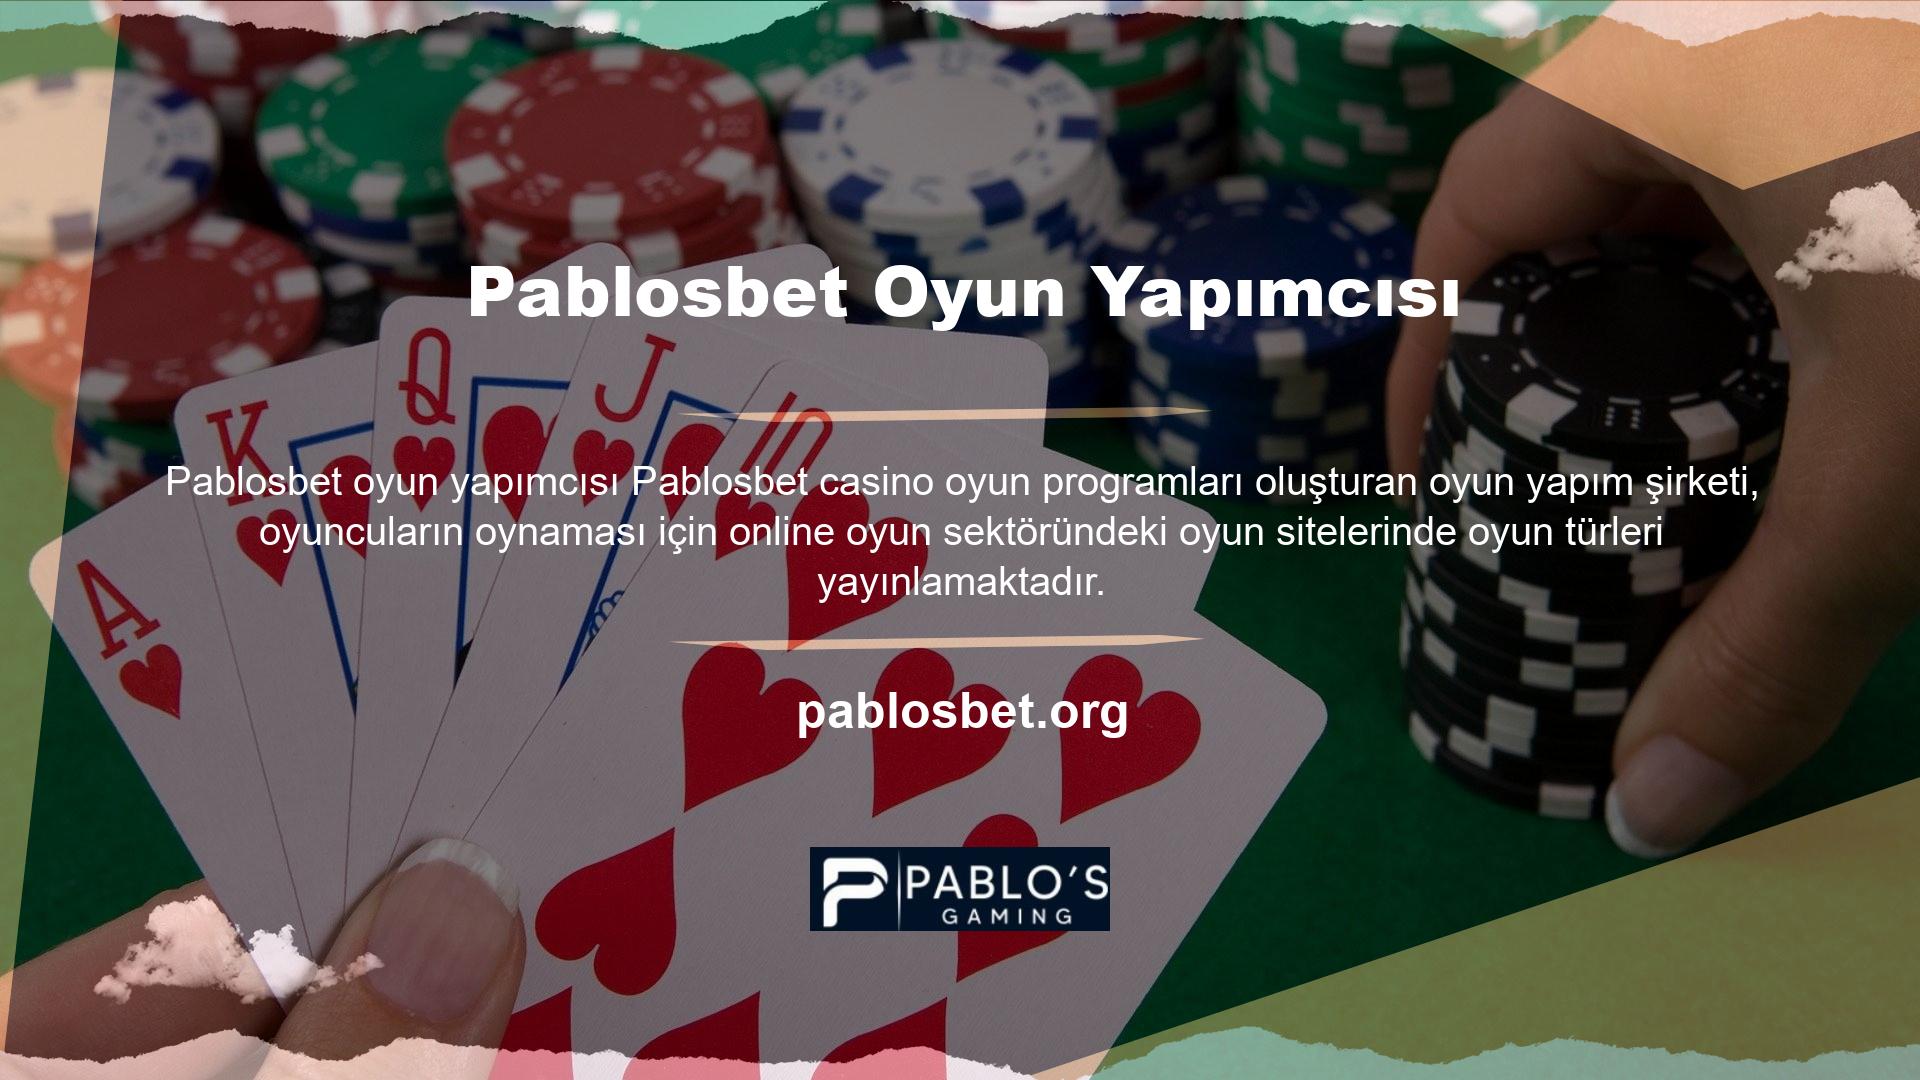 Pablosbet web sitesinde yer alan casino oyun türleri, çeşitli oyun yapımcıları tarafından oluşturulmuş oyunlardır